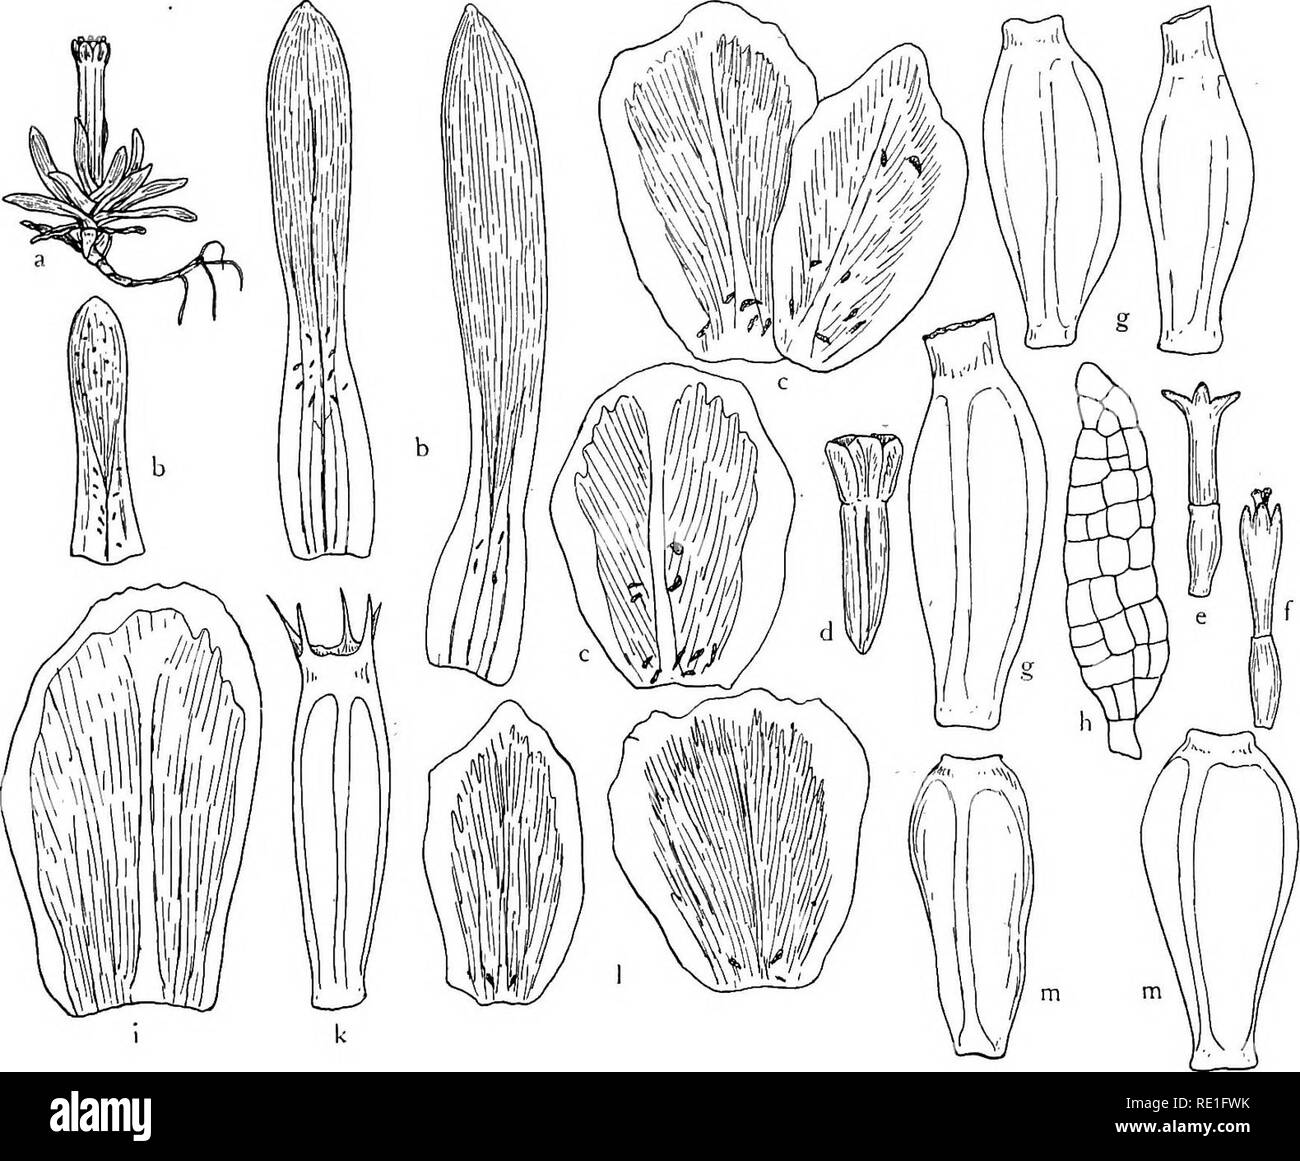 . The phanerogams of the Juan Fernandez Islands. Botany. THE PHANEROGAMS OF THE JUAN FERNANDEZ ISLANDS 189 10—15 mm longus et 1,5—2,5 mm crassus, basi semper tenuis, leviter angulatus, monocephalus. Capitulum circ. 3 mm diam. Involucrum 6—8-phyllum squamis ovatis—latissime obovatis, obtusis, ± truncatis, viridibus apice ± roseo, margine hyalinis, uninerviis, basi praesertim glandulis (supra depictis) munitis, 2—2,2 mm longis. Flores obscure rubri, pauci—sat numerosi (ad 16 visi), circ. 3 mm longi: ^ perpauci, $! magis numerosi, omnes fertiles, stylus floris g distincte bifido fere ut in $. Cal Stock Photo